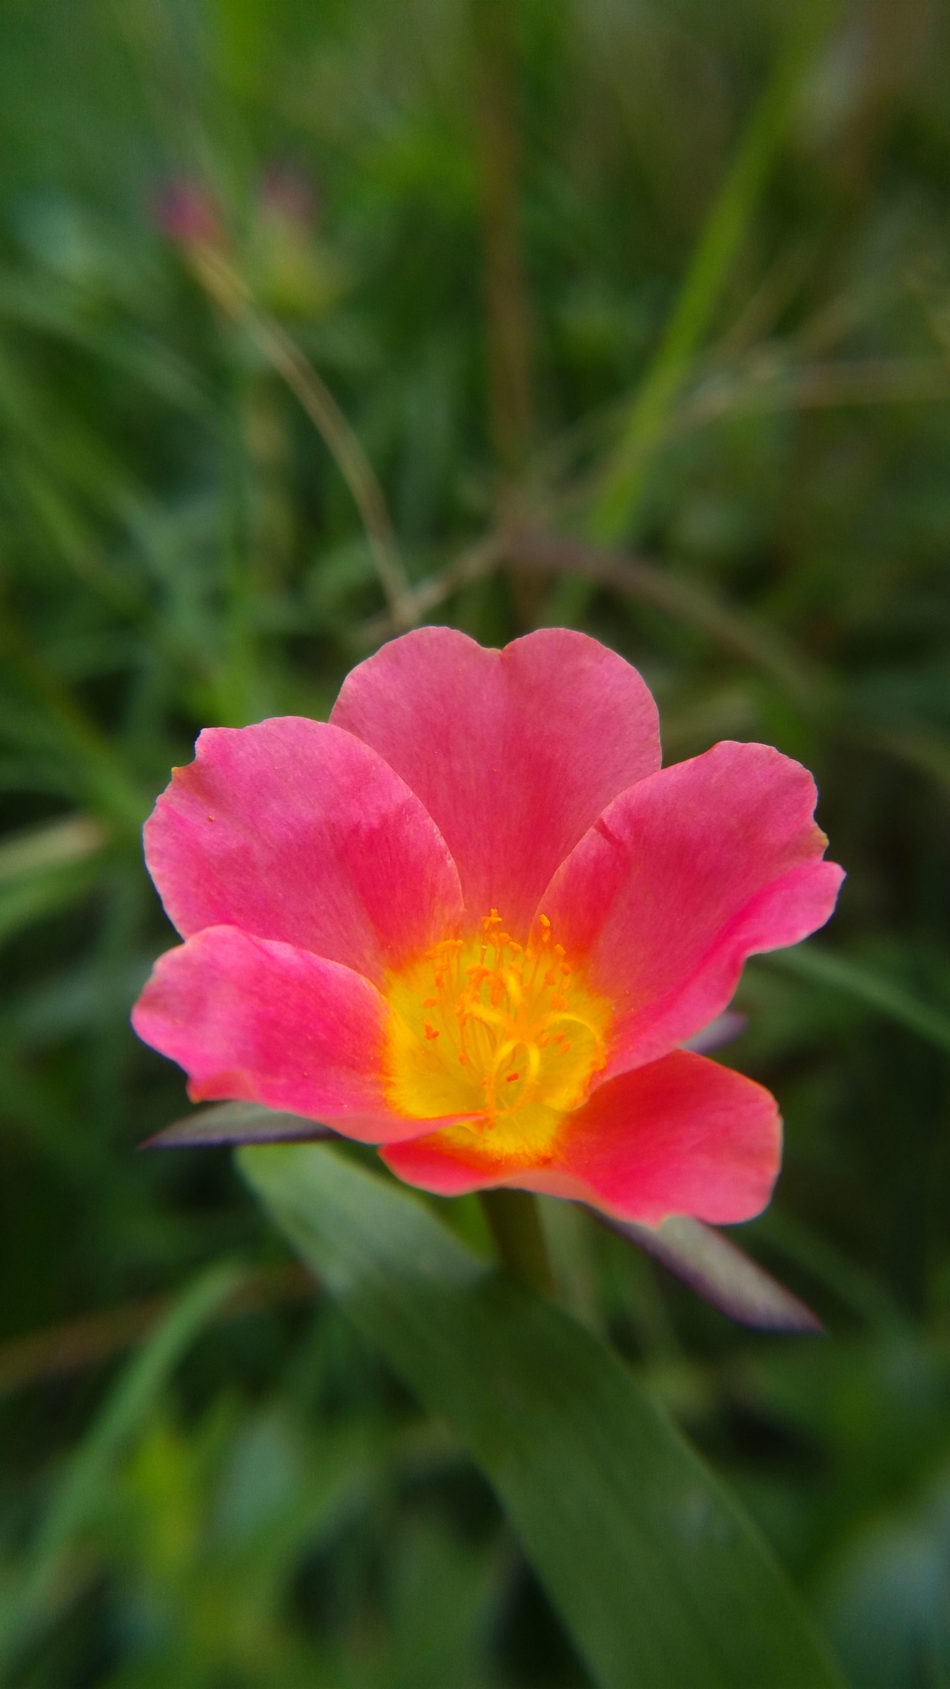 Moss Rose Red Flower Spring 4K Ultra HD Mobile Wallpaper